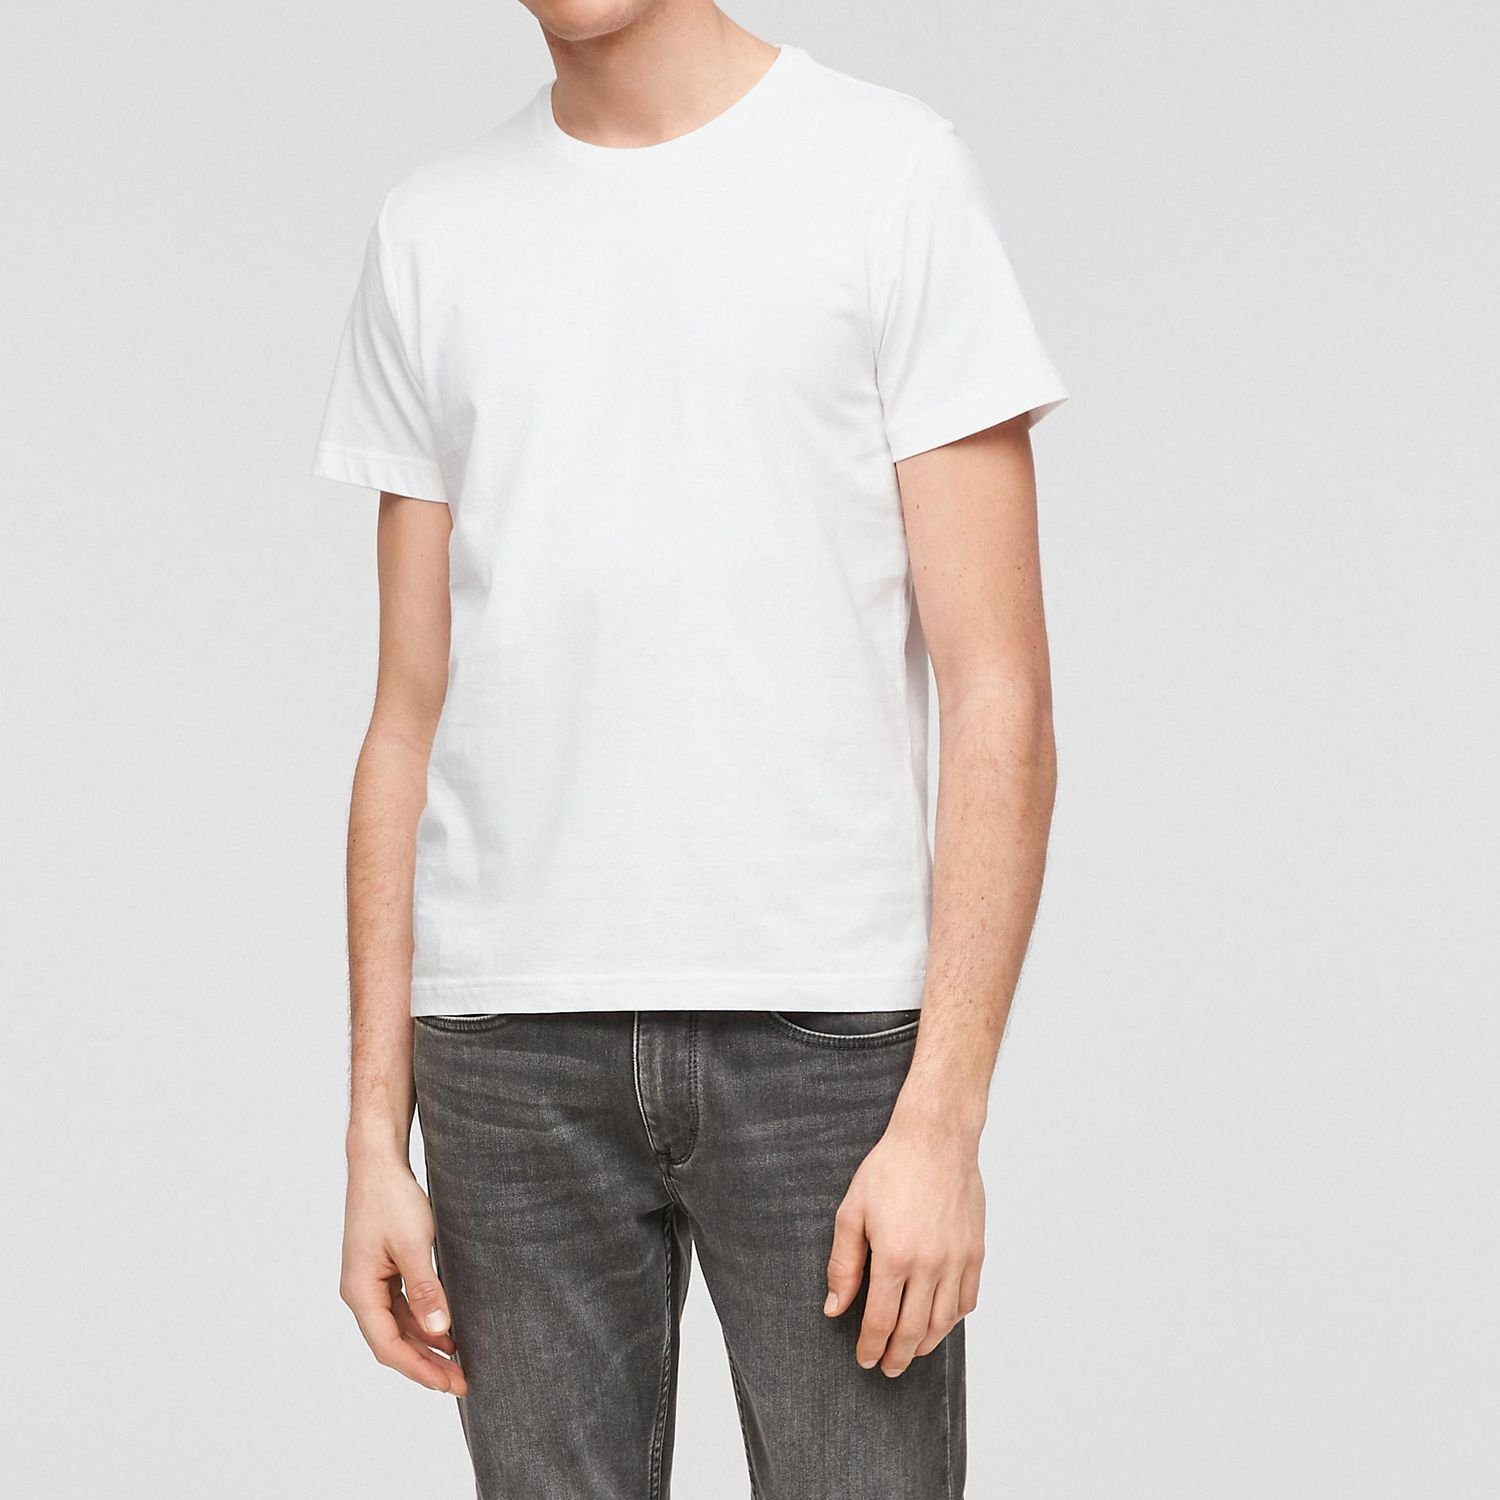 mit Logo, Pack Basic, Look Weiß s.Oliver 2er (2-tlg) T-Shirt moderner unifarben, schlicht, im